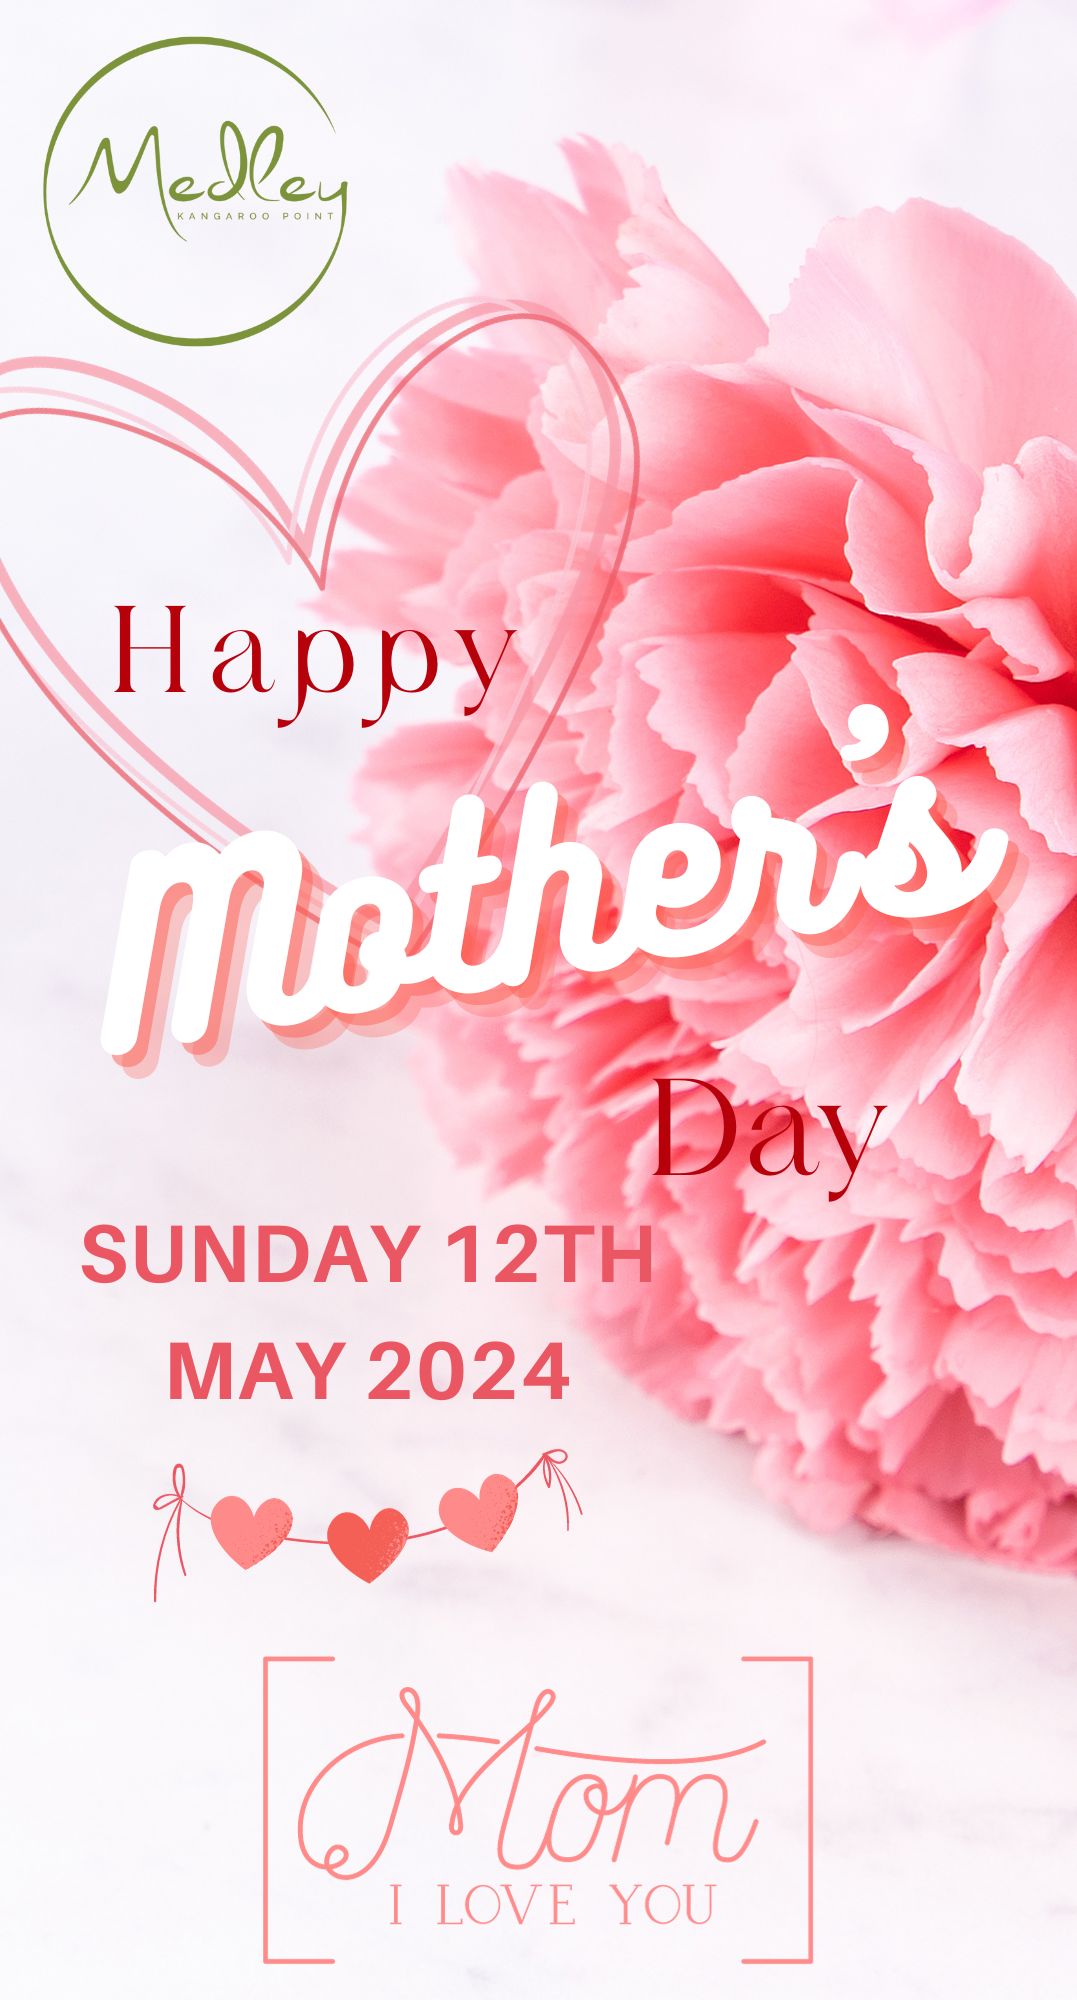 Happy Motherr's Day Website Promo